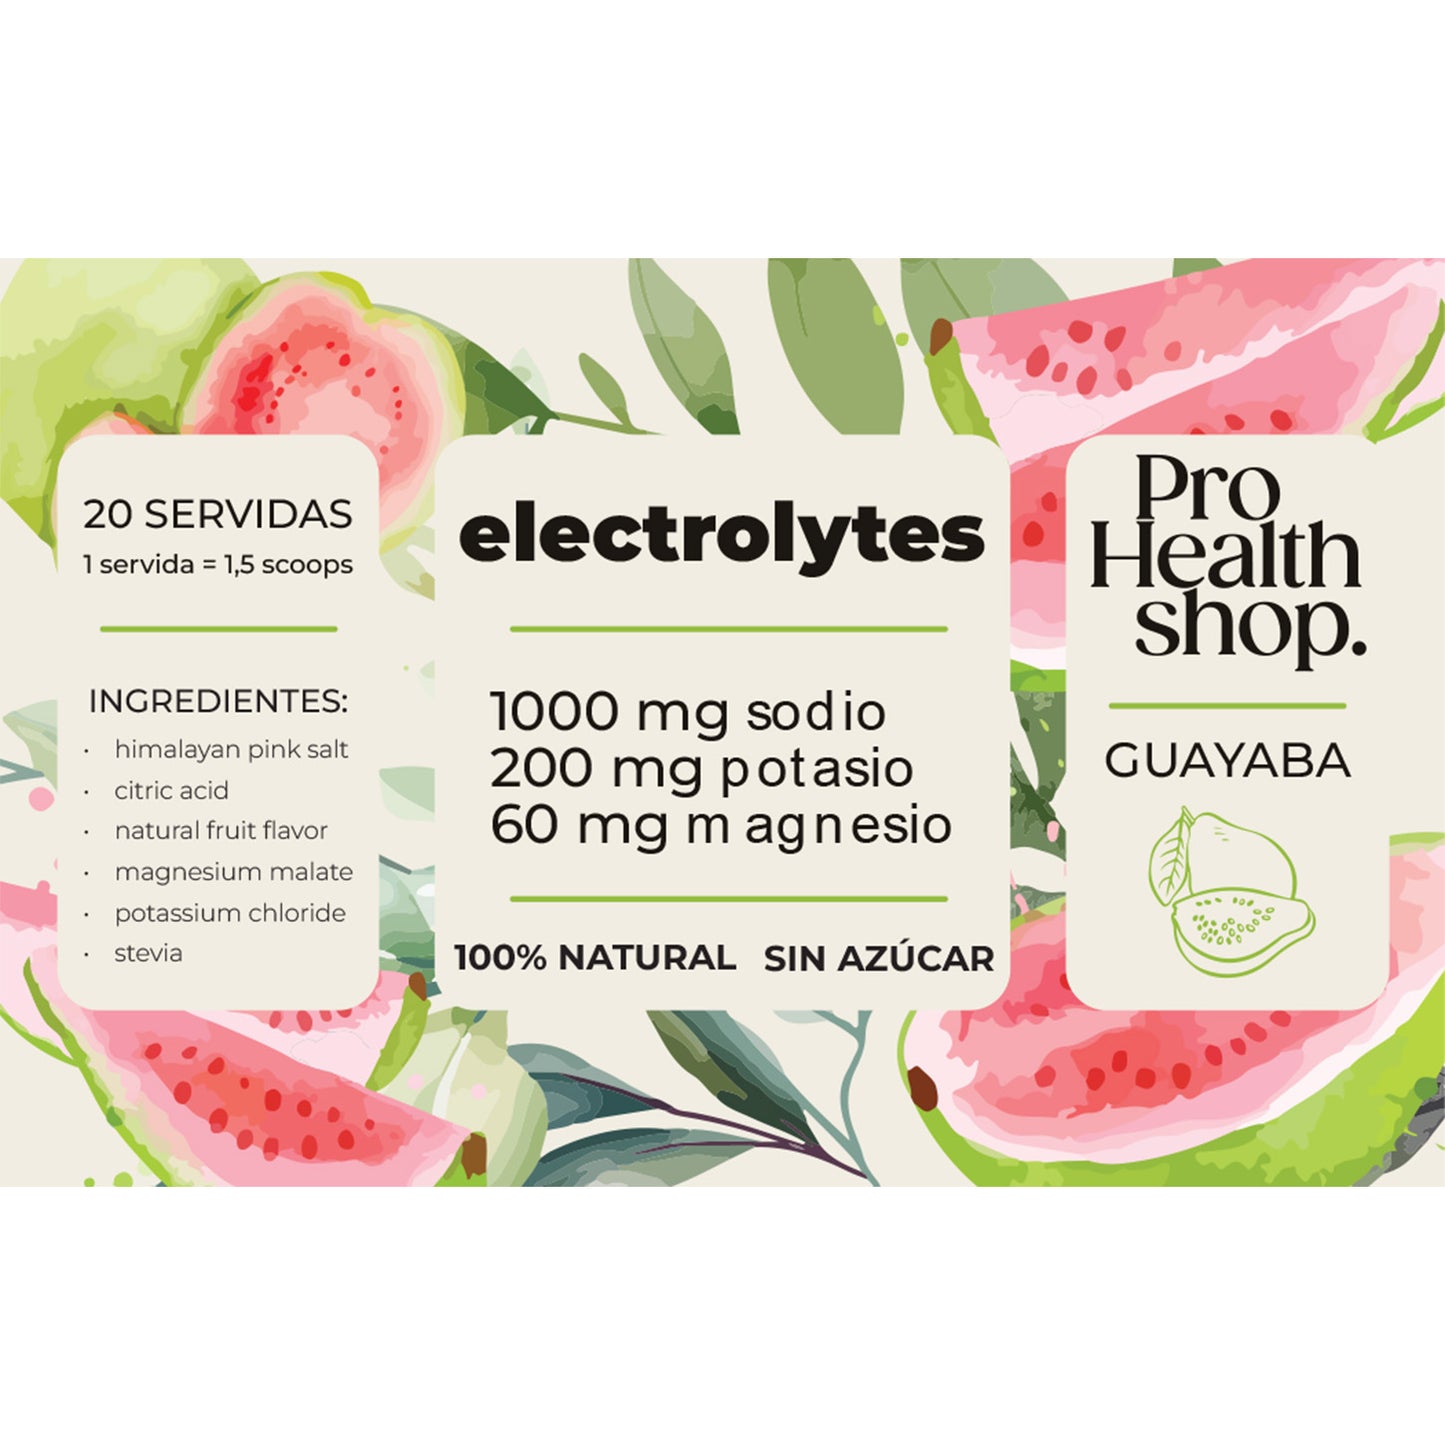 Recupera tu Equilibrio Electrolyte con la Fórmula de Electrolytes de Pro Health Shop | ProHealth Shop [Panamá]